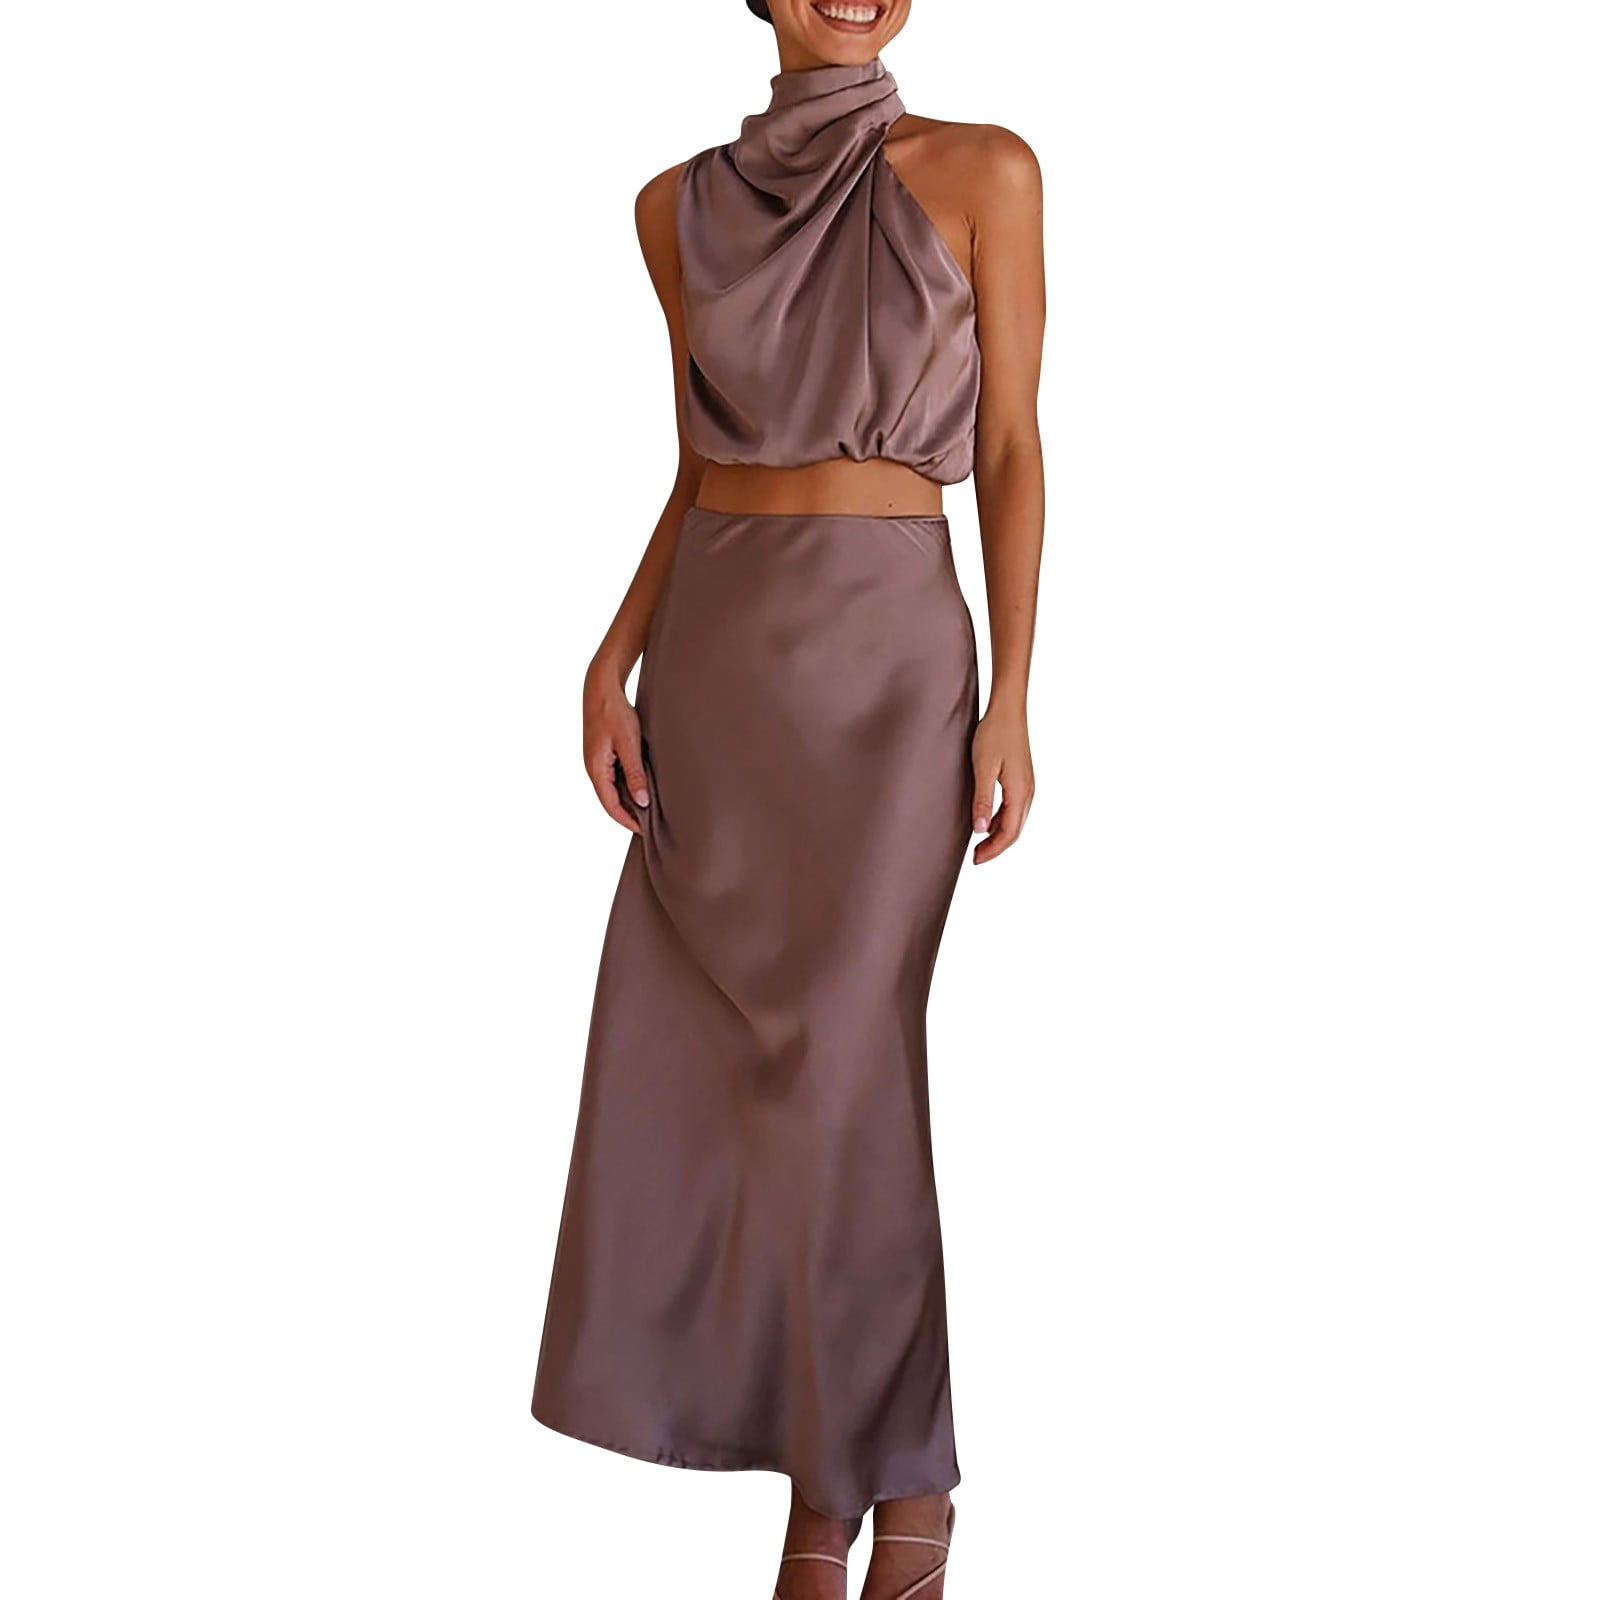 Fattazi Skirts For Women Women's Summer Long Formal Satin Dress Neck ...